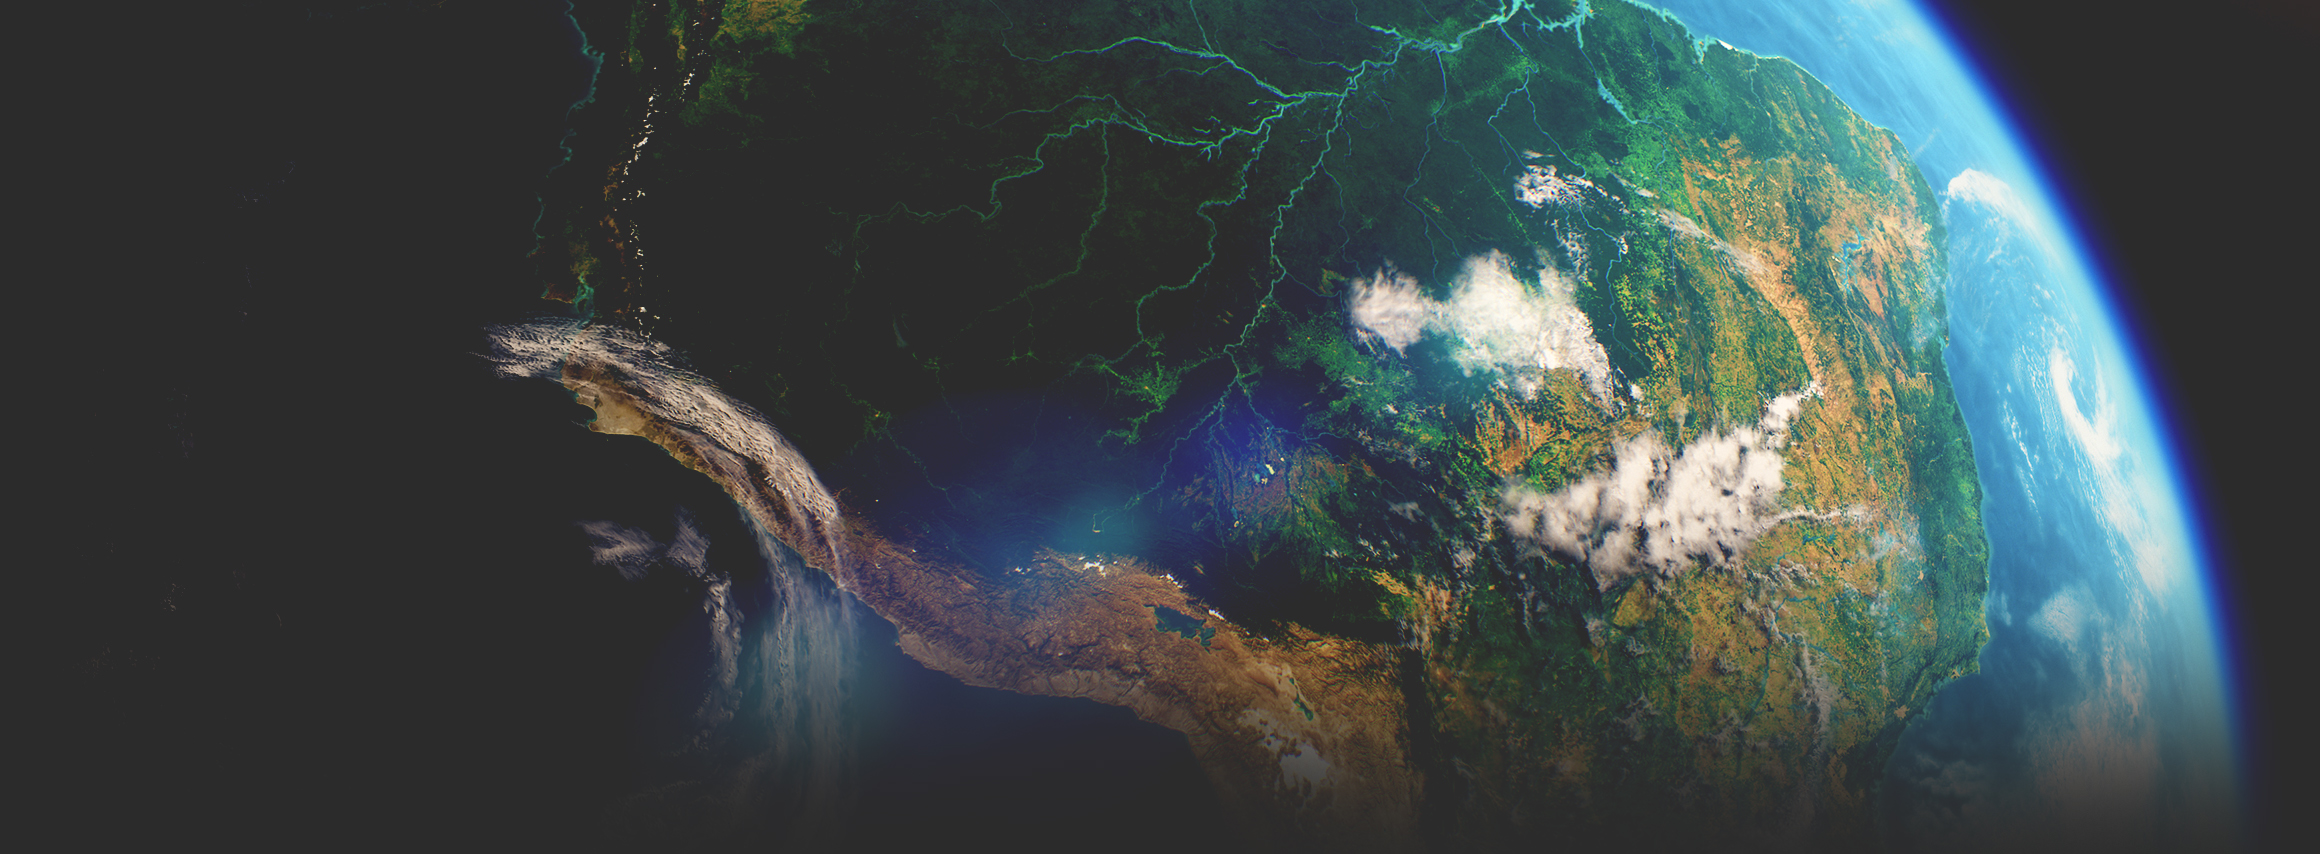 Imagens de satélite tiradas do espaço mostram um continente verde com um rio passando por ele, o oceano e a atmosfera